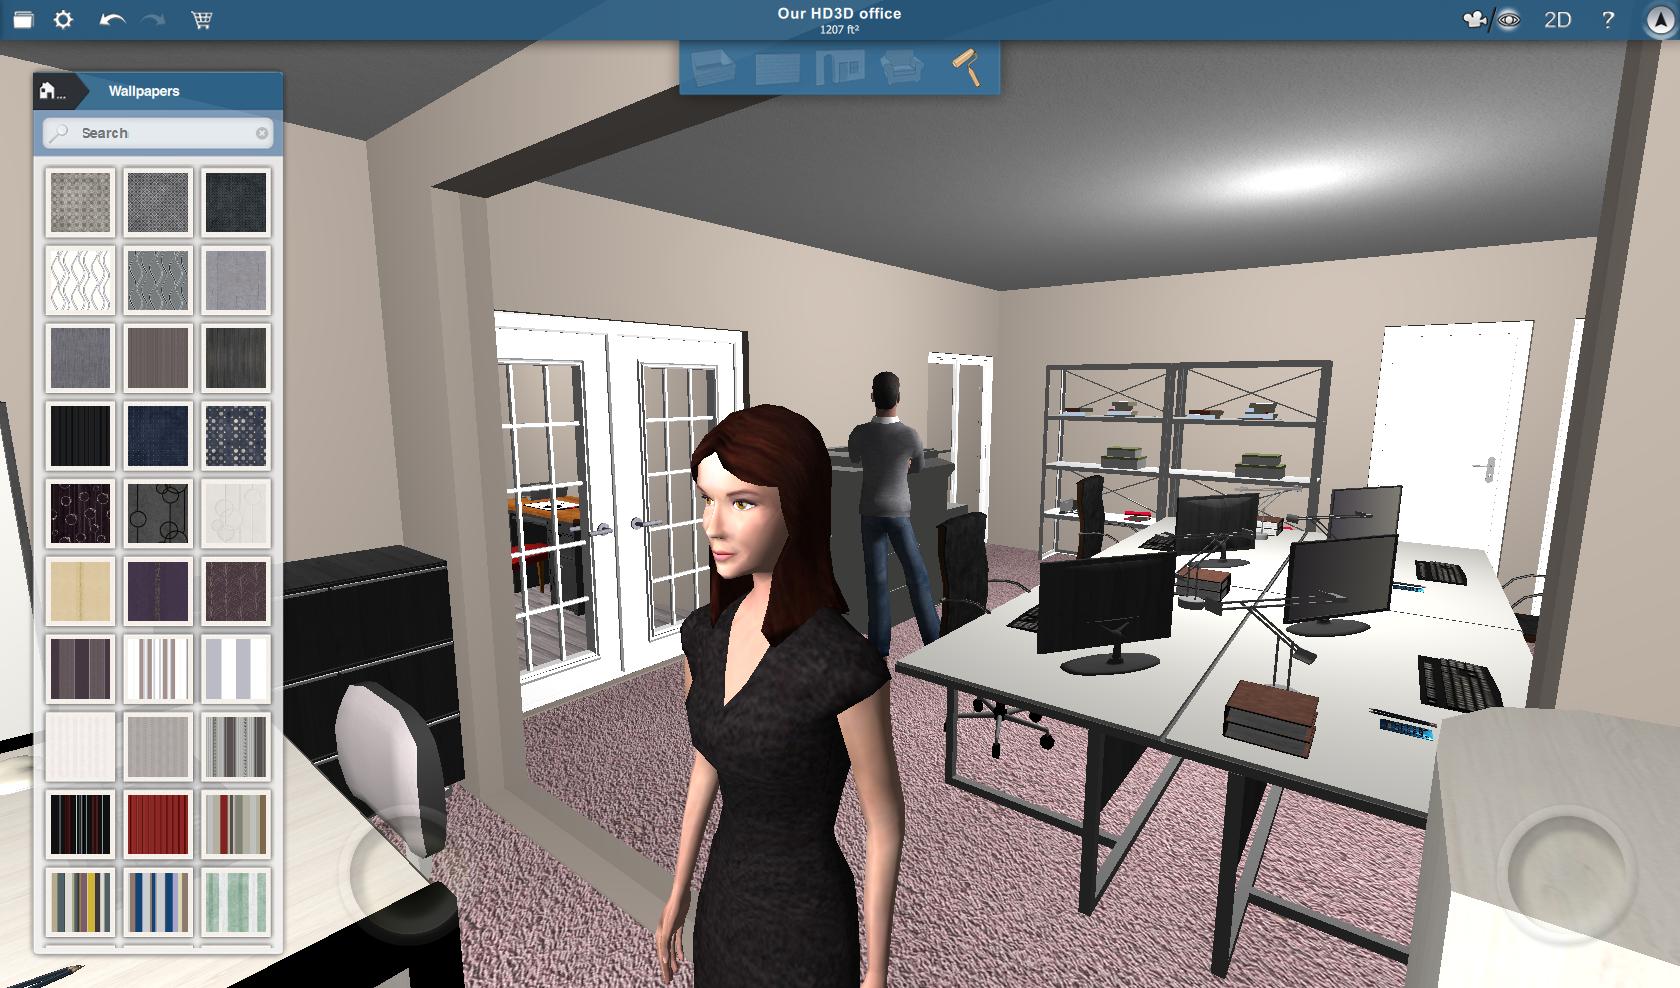  Home  Design  3D  PC  Steam Speel leuke spelletjes denda com